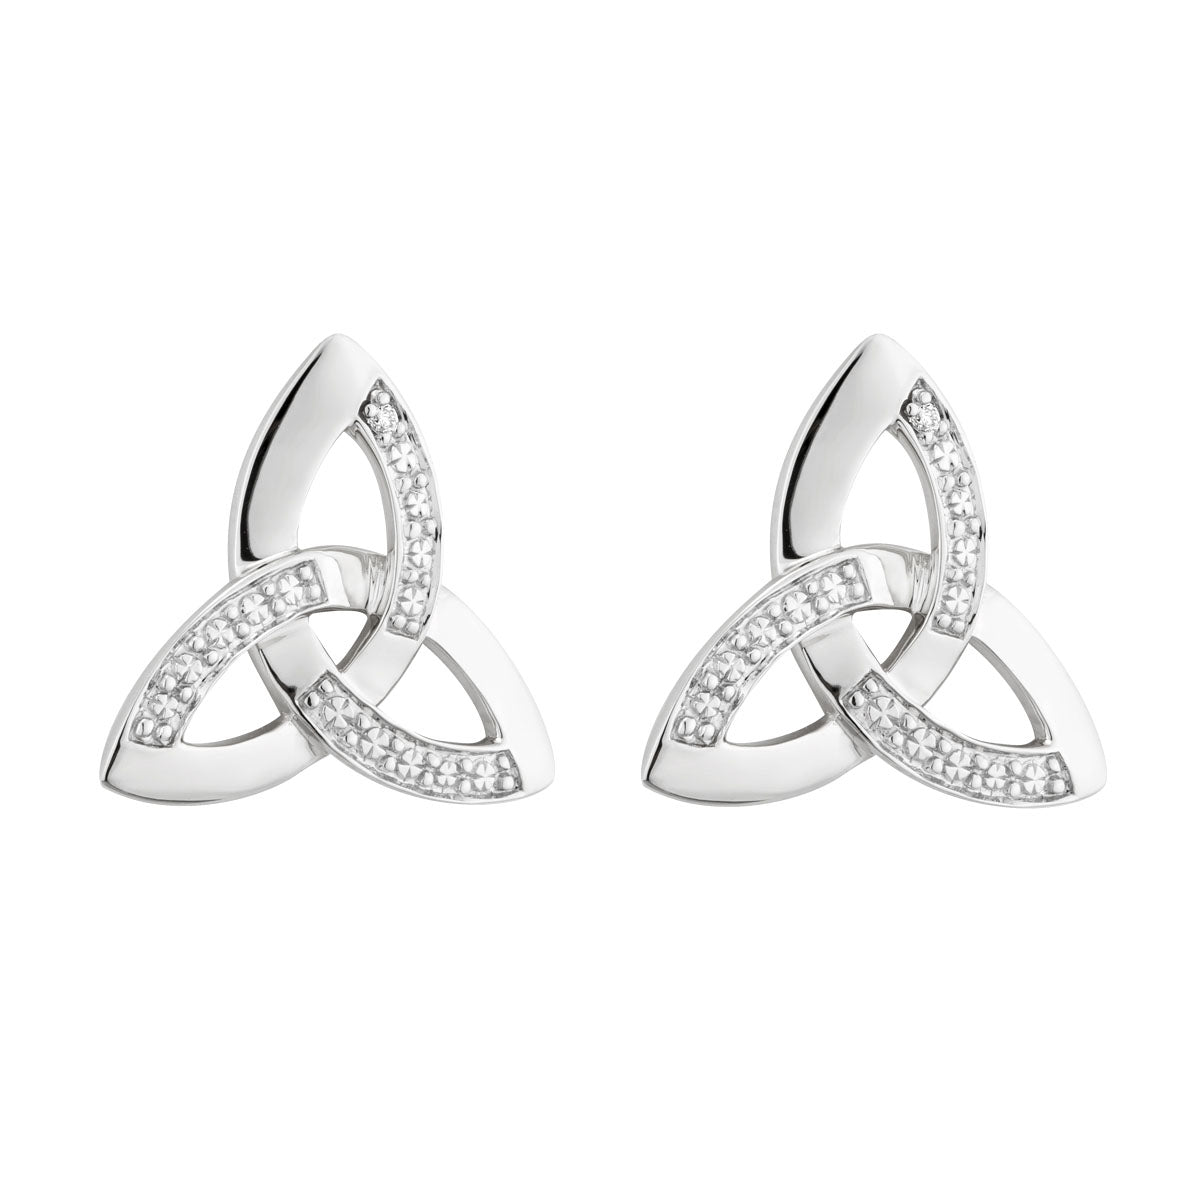 14K white gold diamond trinity knot stud earrings s33102 from Solvar